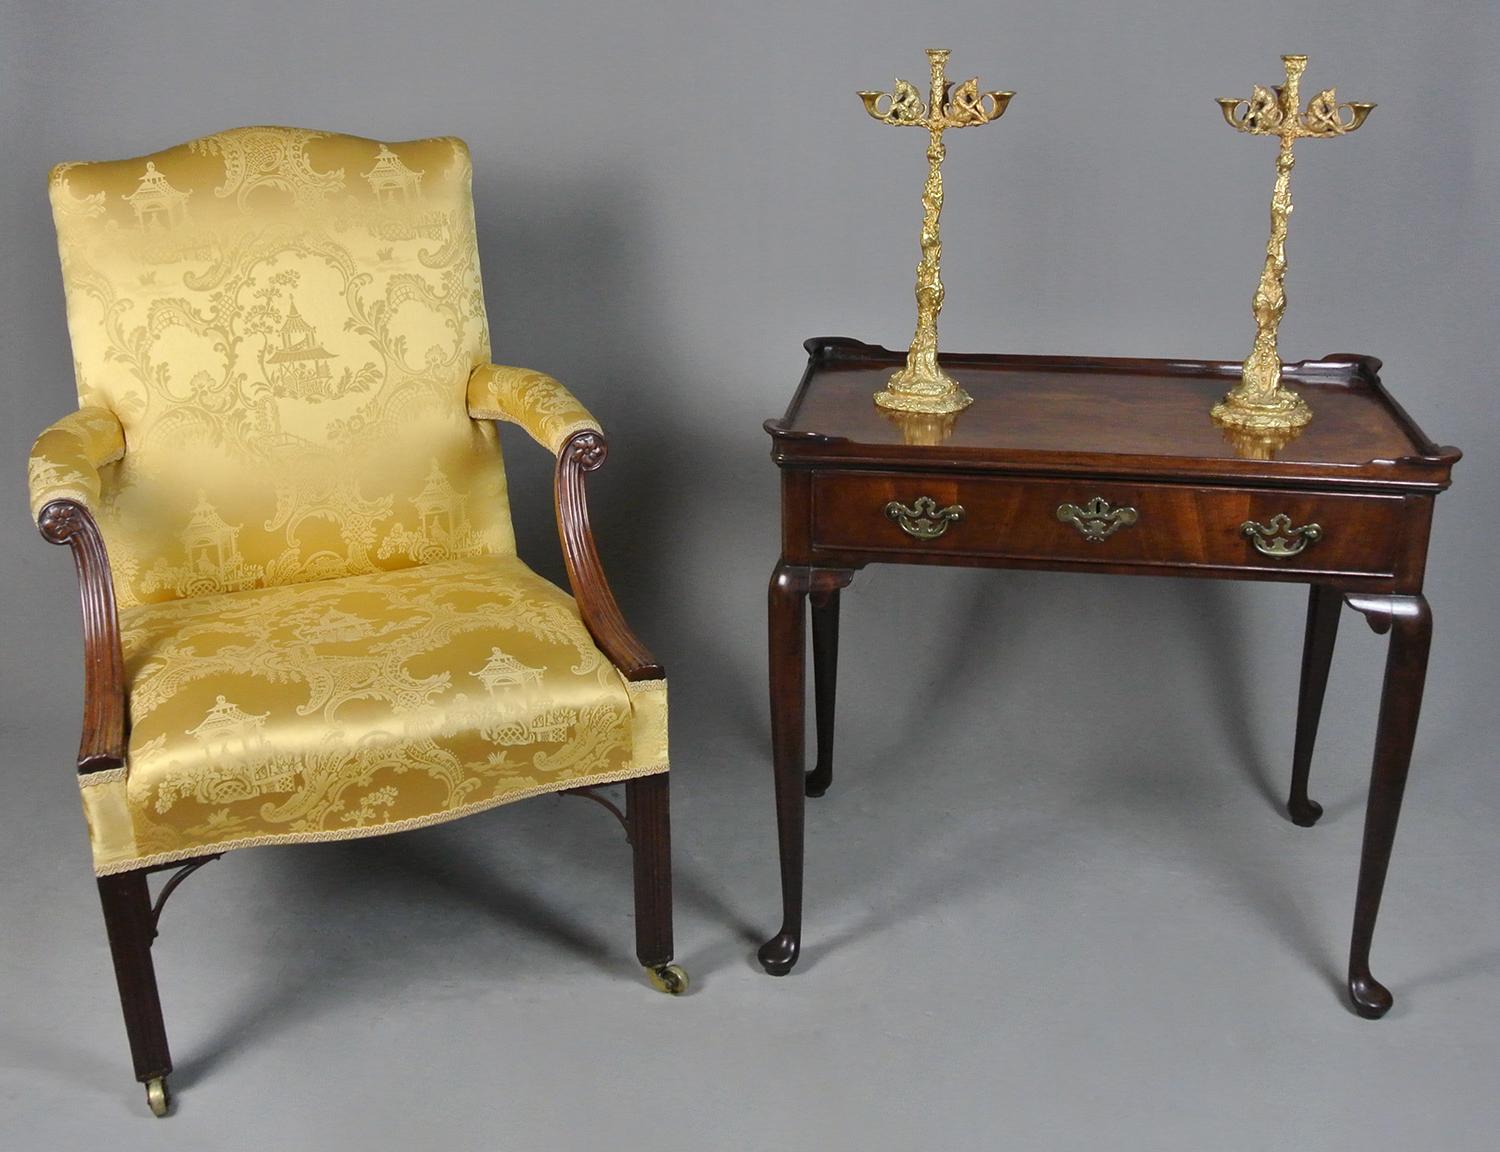 Une chaise Gainsborough géorgienne de très belle qualité.

Cet exemplaire exceptionnel est en superbe état d'origine et extrêmement confortable.

Elle a été récemment recouverte d'une soie pure de couleur vieil or de type Chinoiserie, appelée